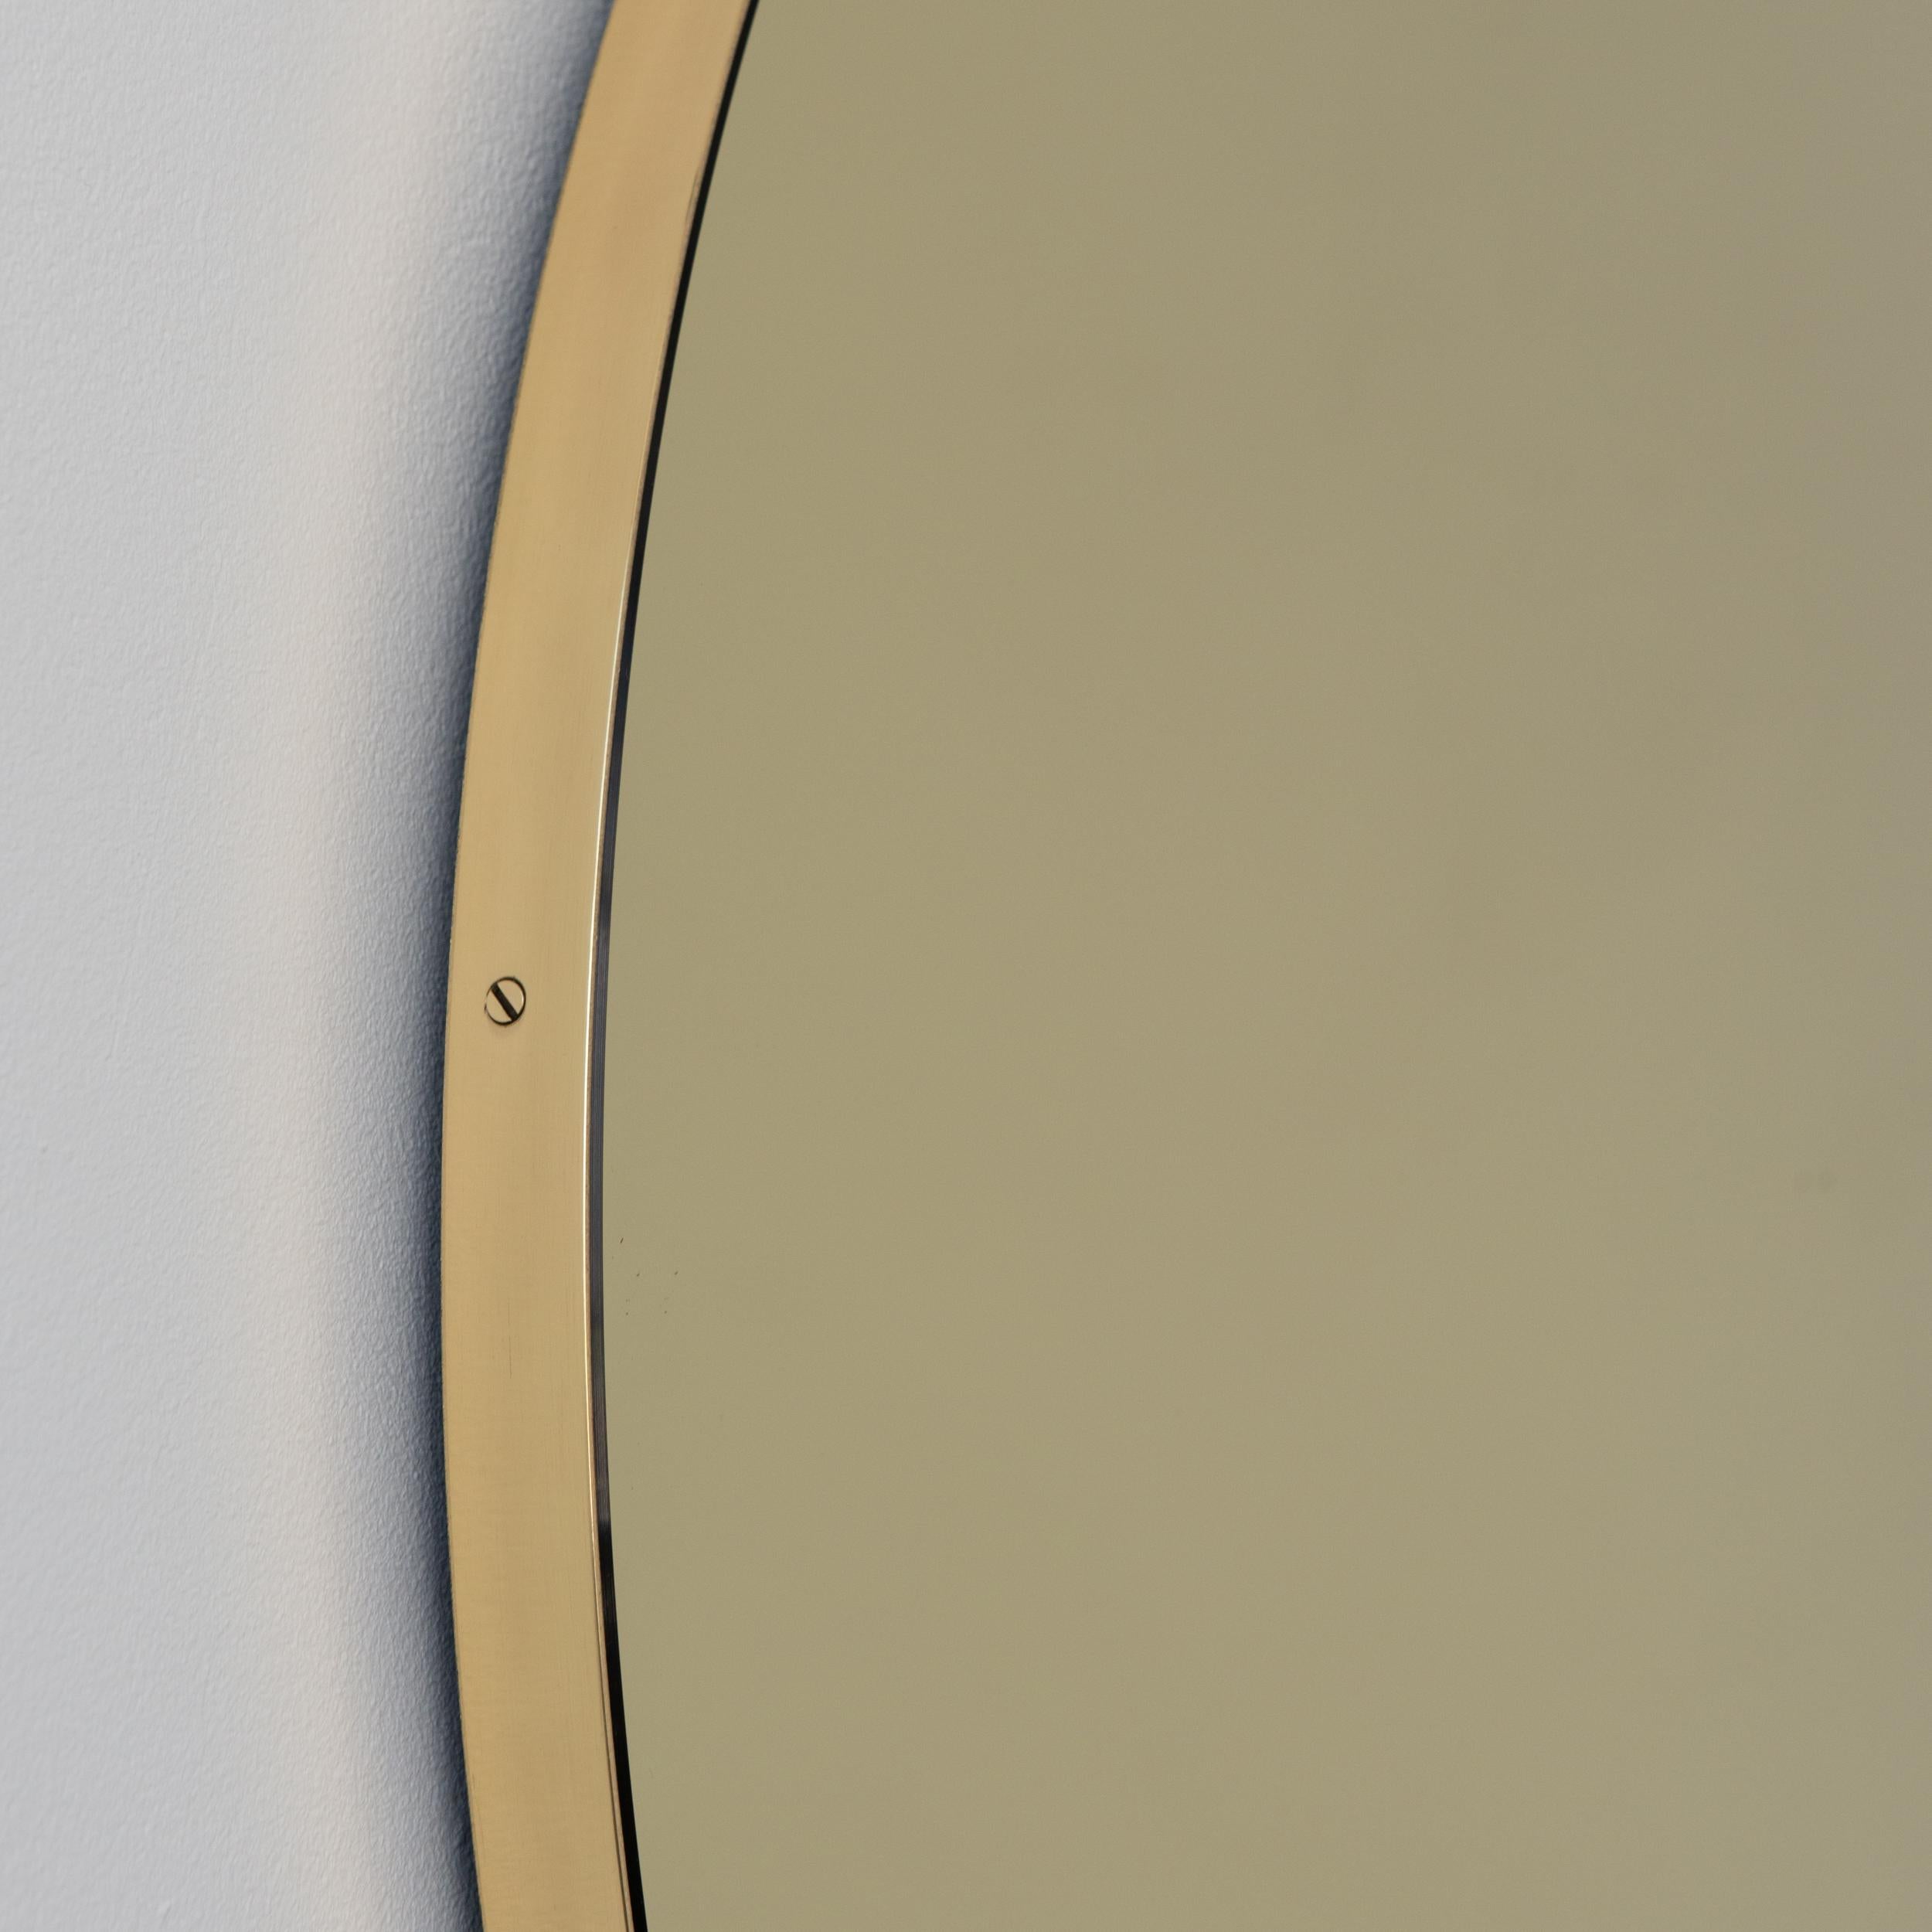 Miroir rond Orbis™ contemporain teinté d'or avec un cadre minimaliste en laiton brossé massif. Les détails et la finition, y compris les vis en laiton visibles, soulignent l'aspect artisanal et la qualité du miroir, véritable signature de notre